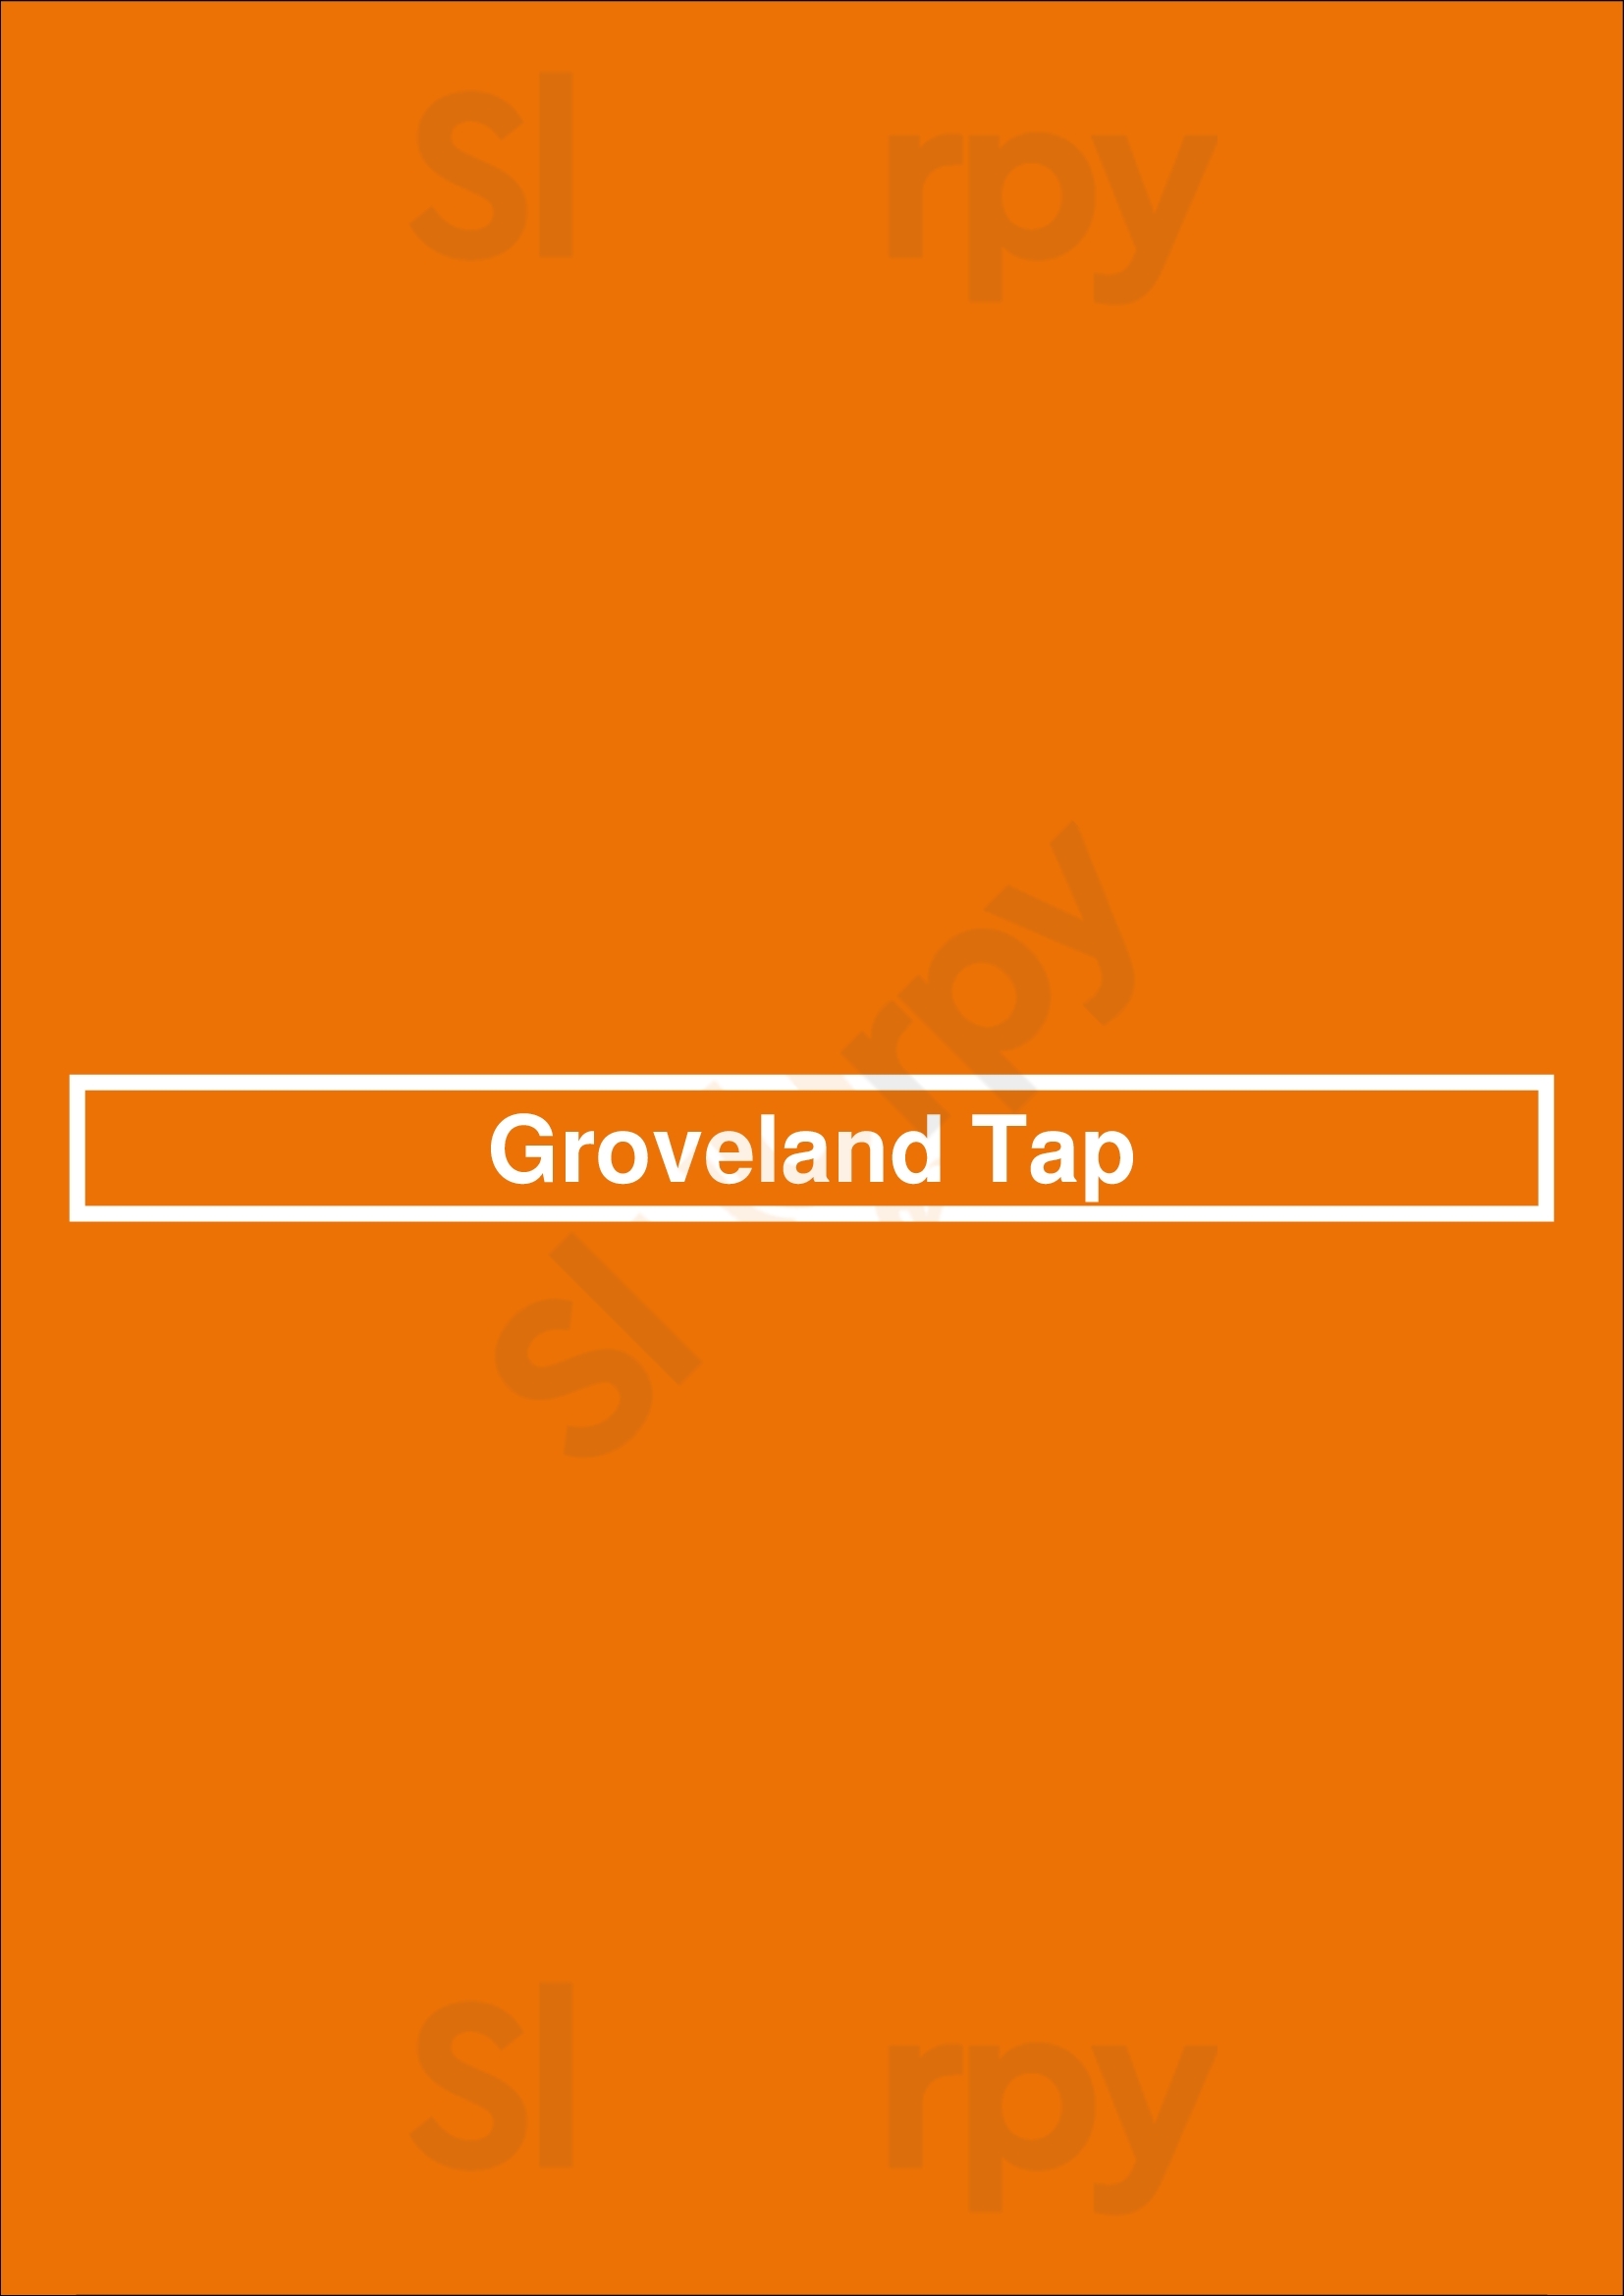 Groveland Tap Saint Paul Menu - 1